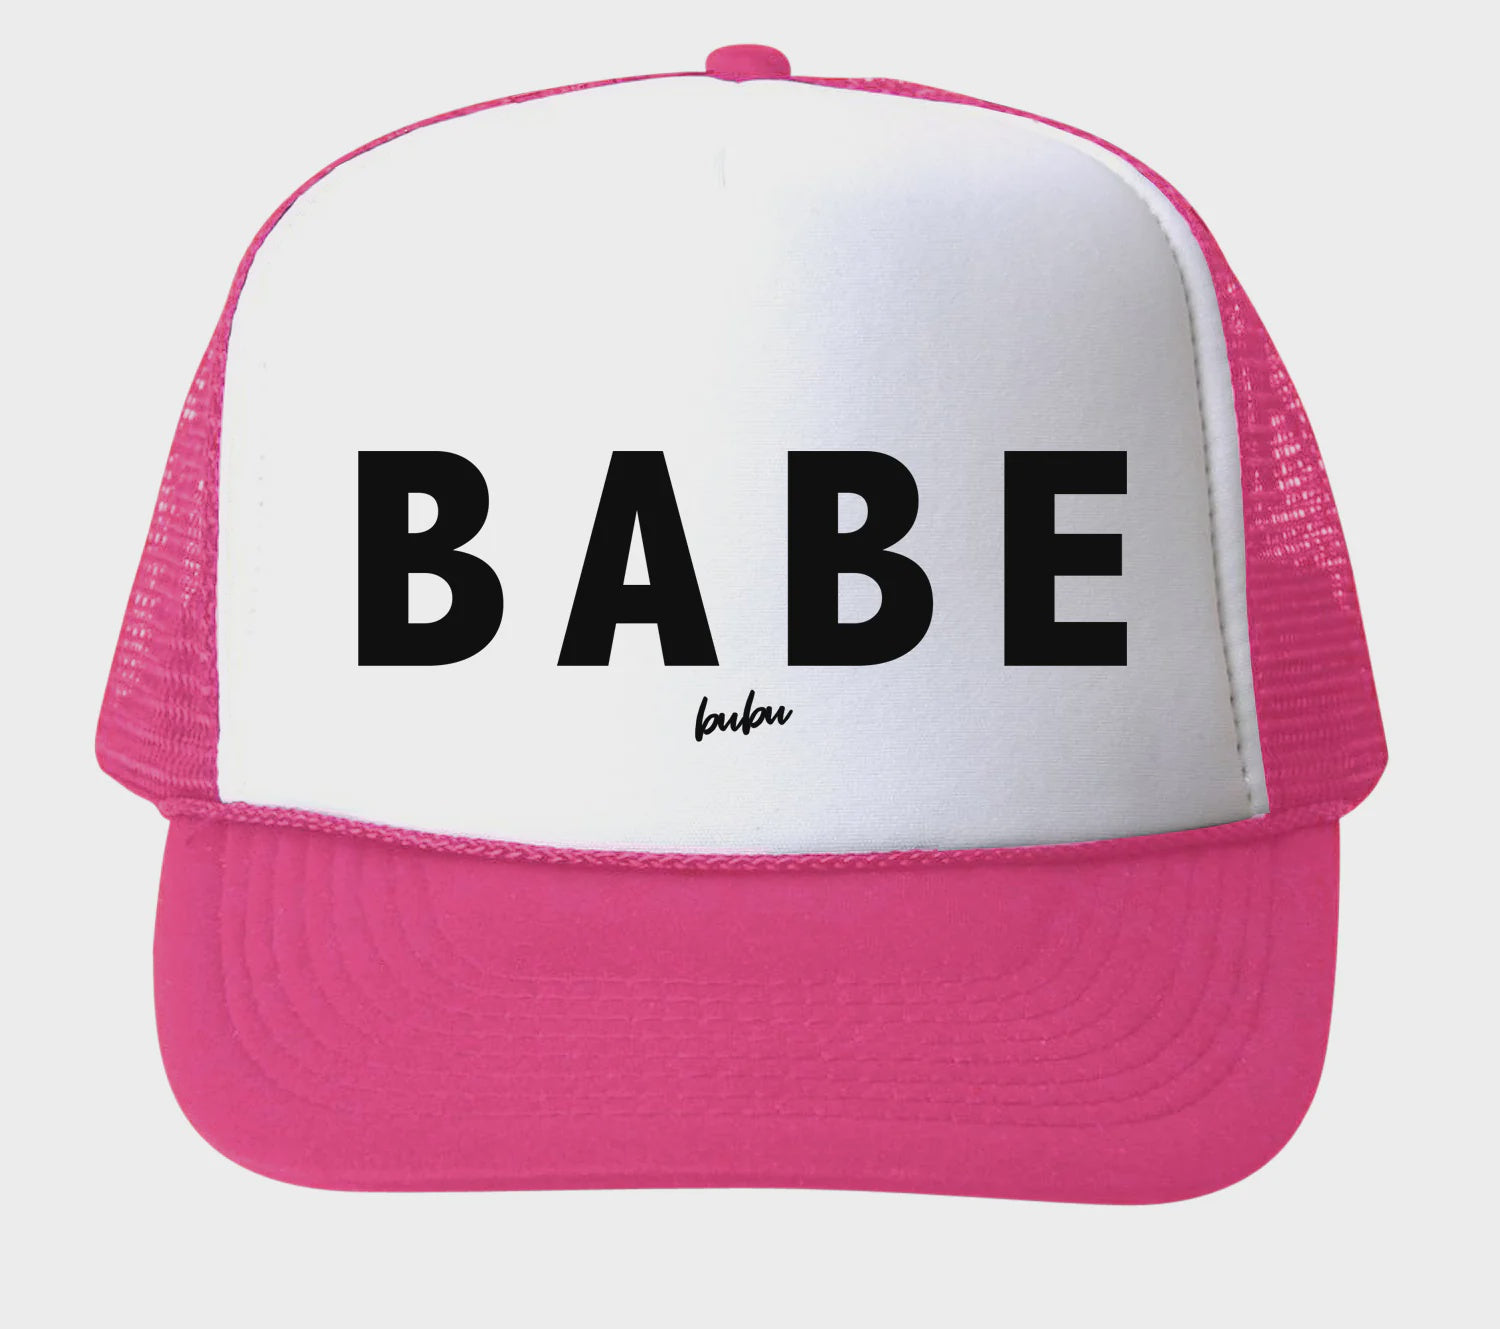 Babe Trucker Hat - Hot Pink